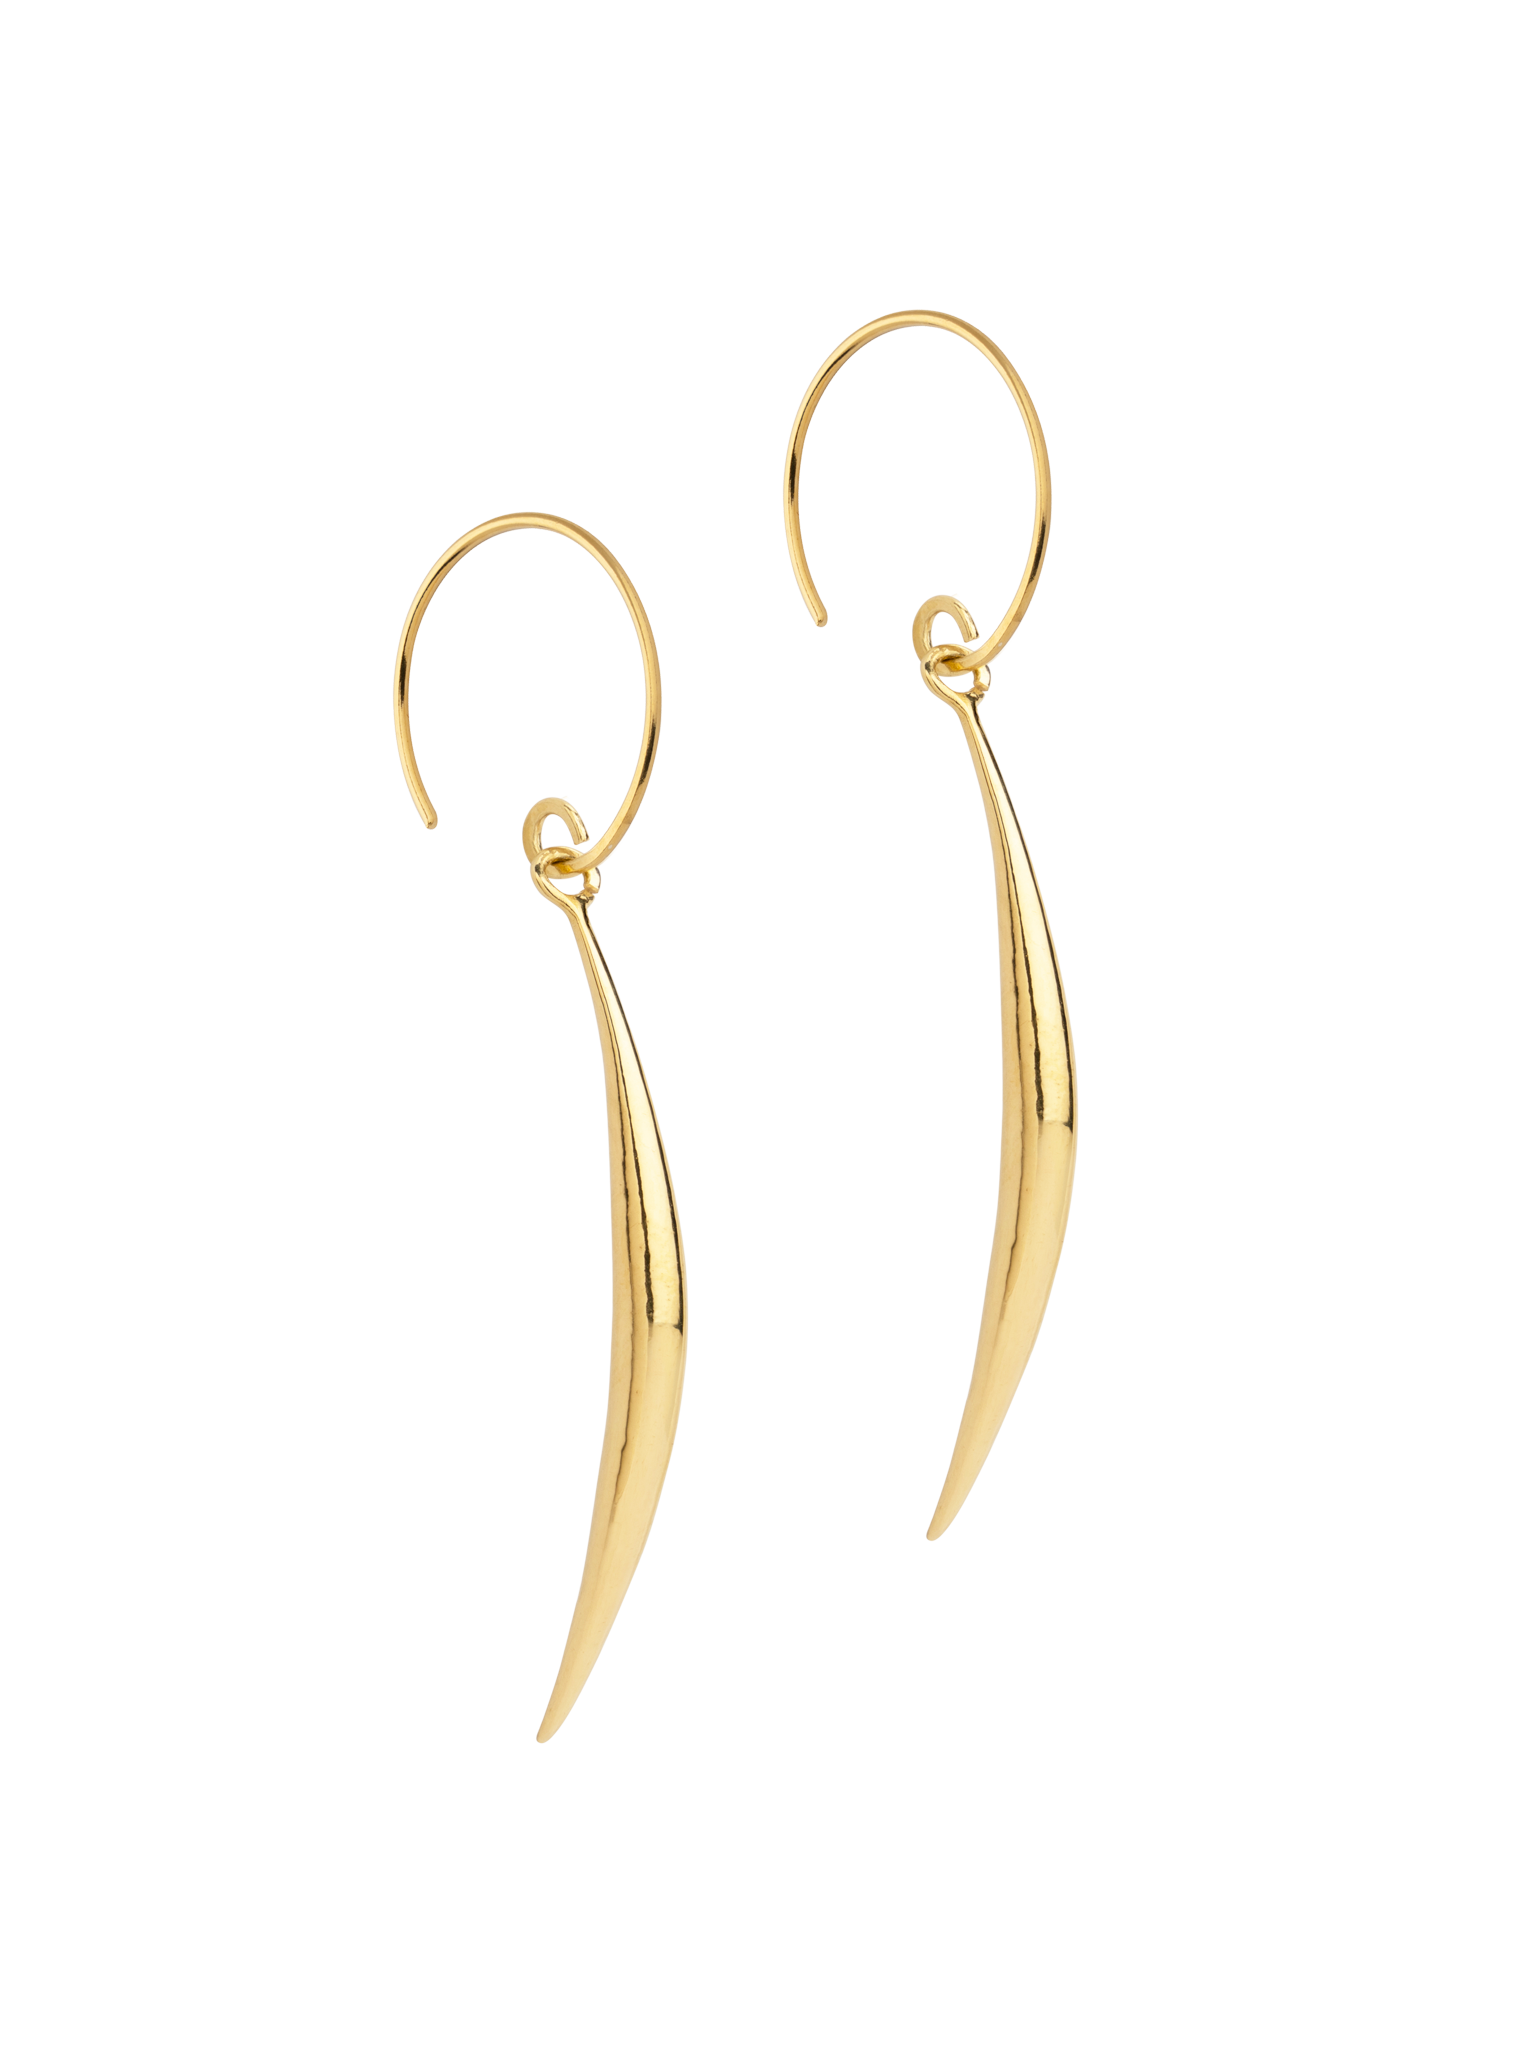 Golden tusk earrings